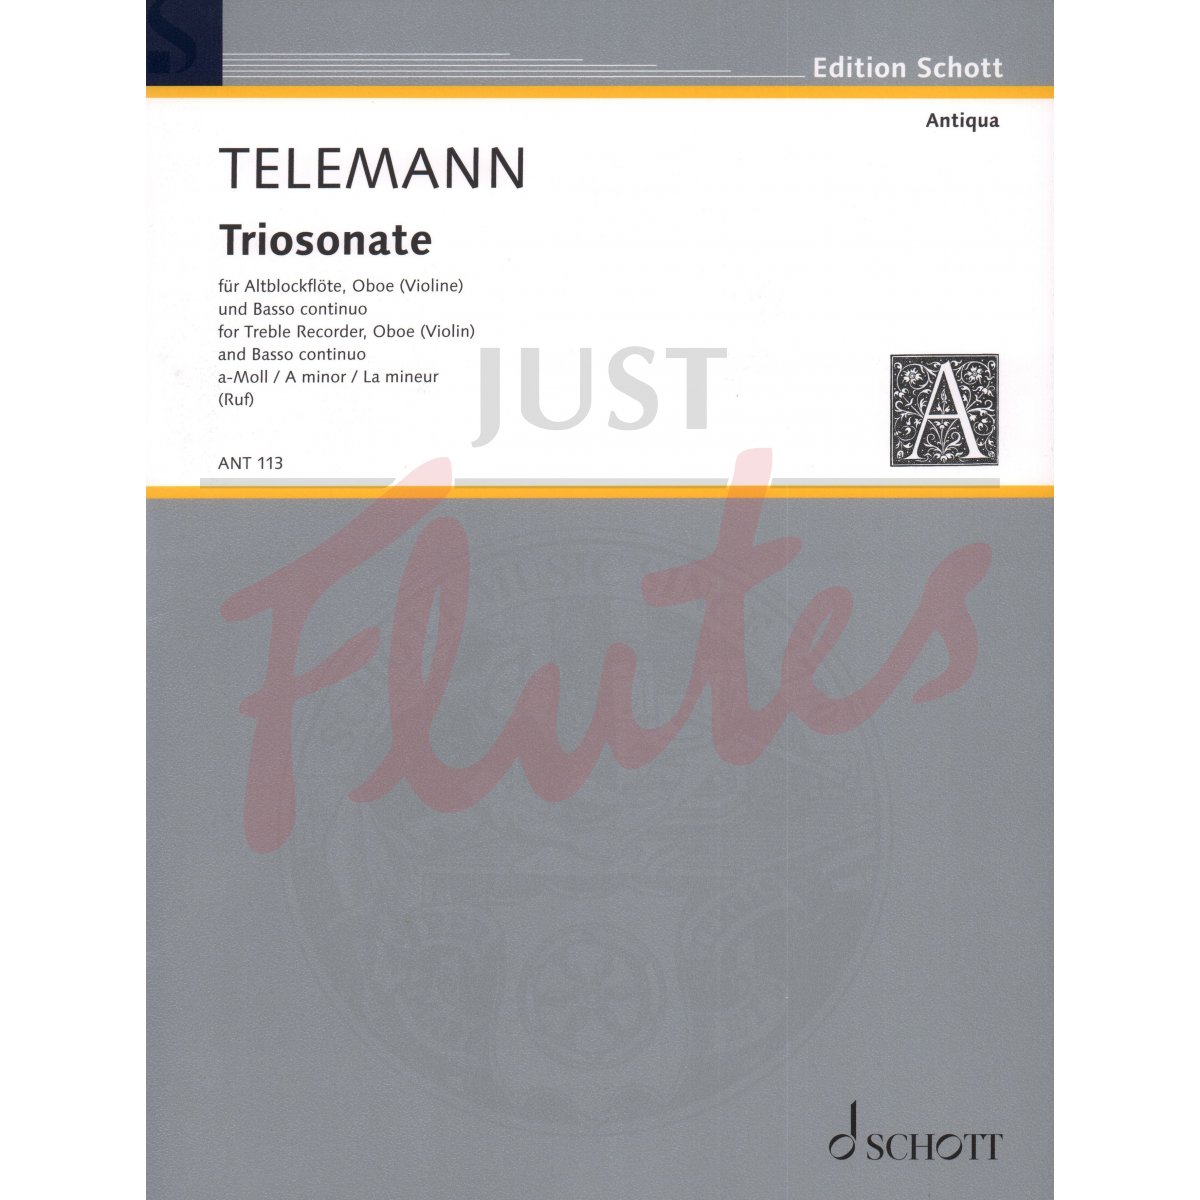 Trio Sonata in A minor for Flute, Oboe and Basso Continuo